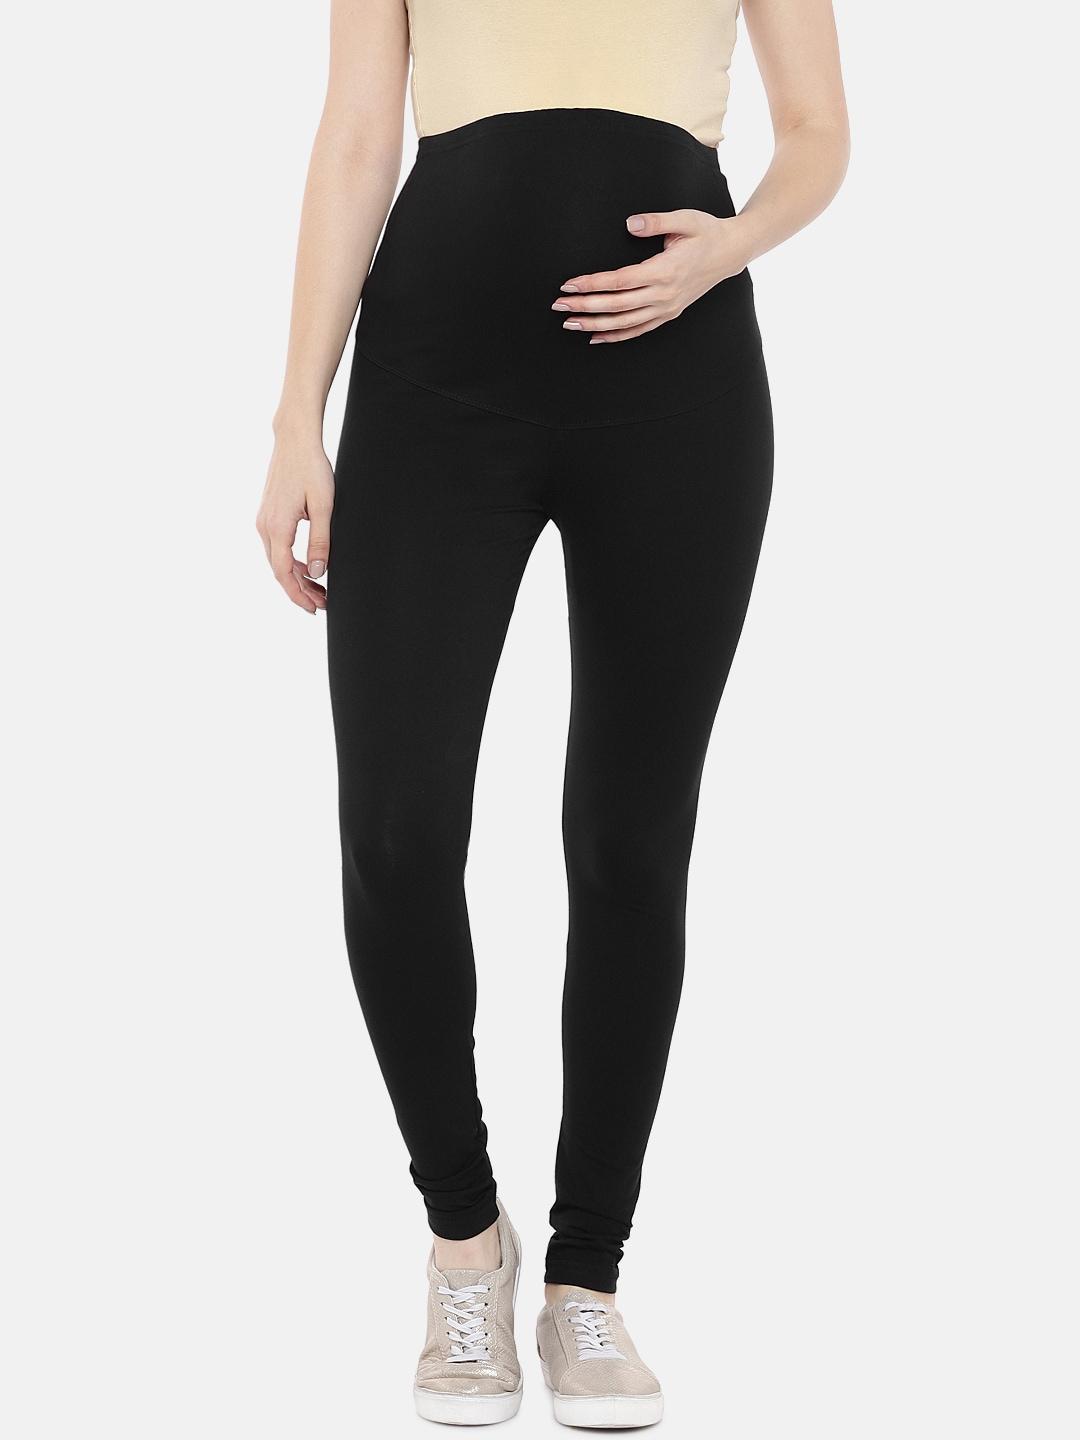 blush-9-maternity-women-black-solid-ankle-length-maternity-leggings